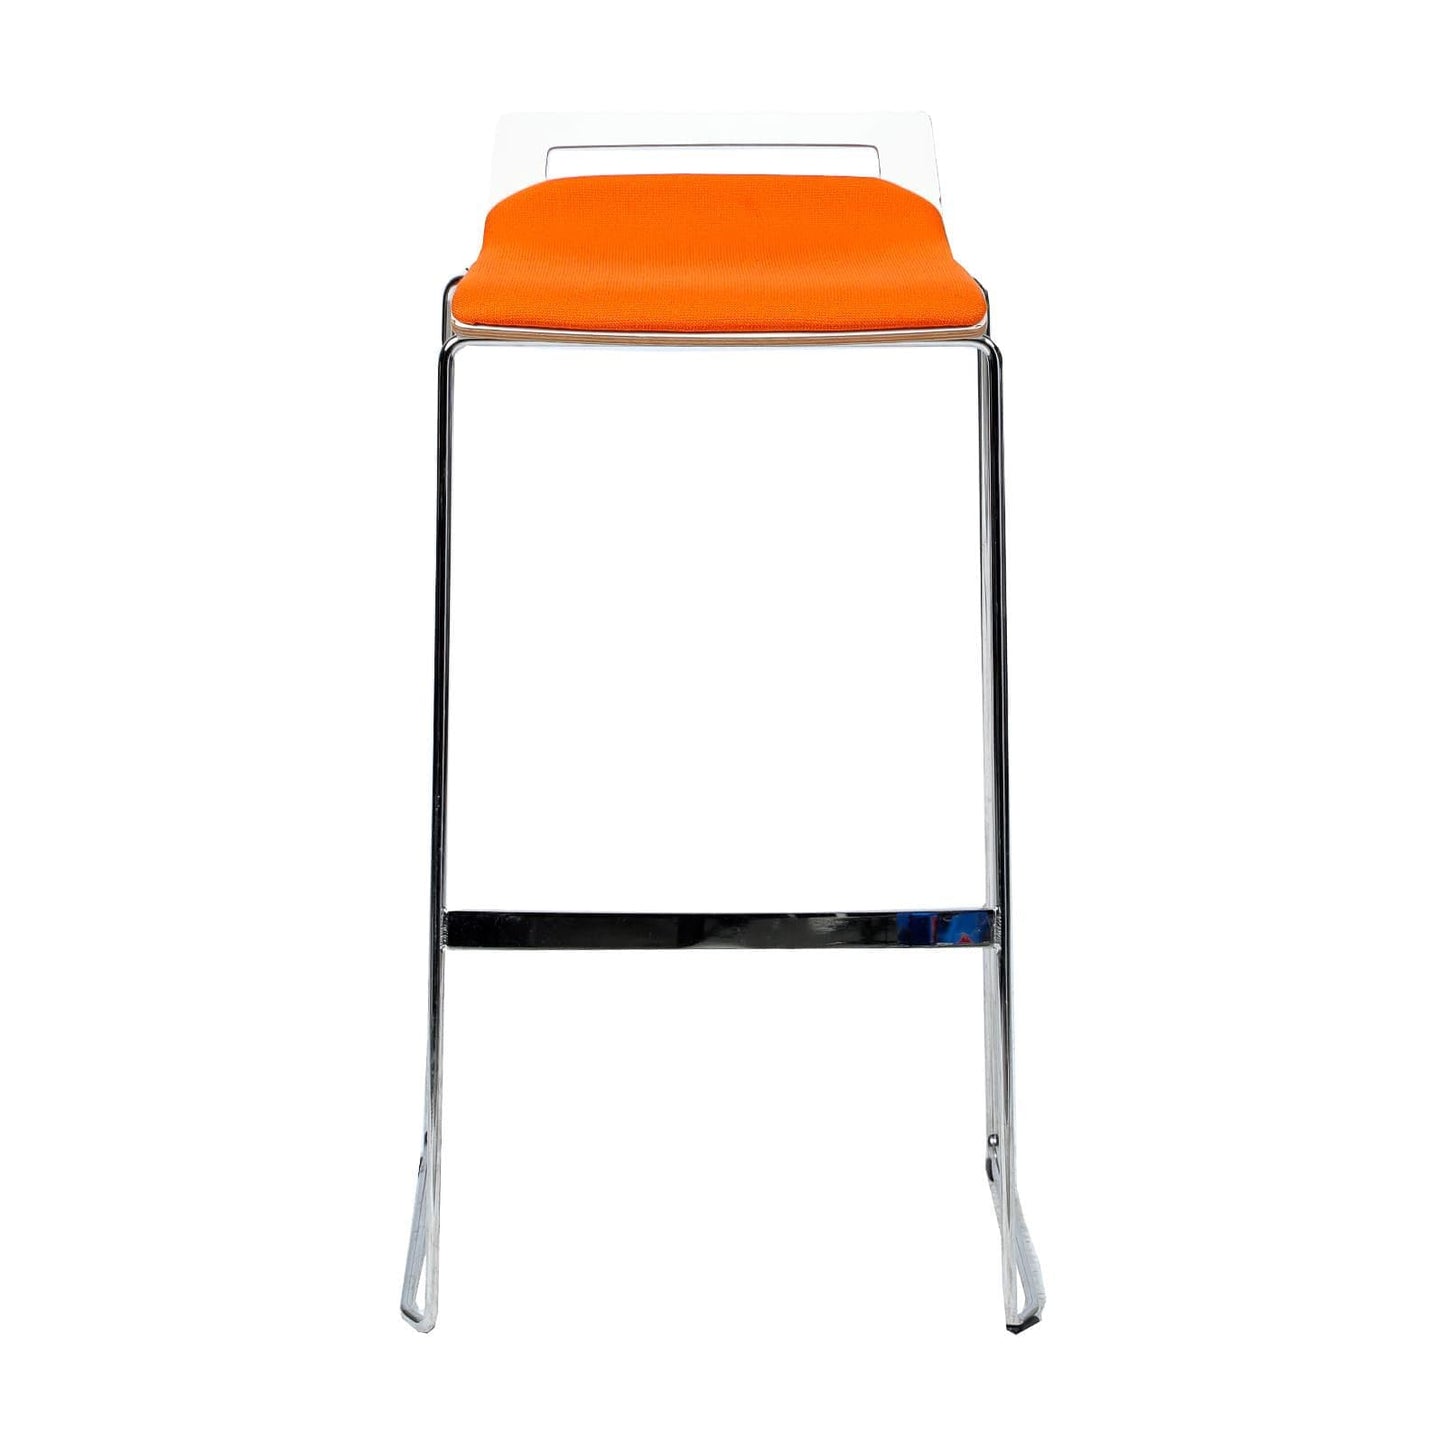 Tabouret haut Sedus occasion - Orange - 88 x 45 x 35 cm-Bluedigo